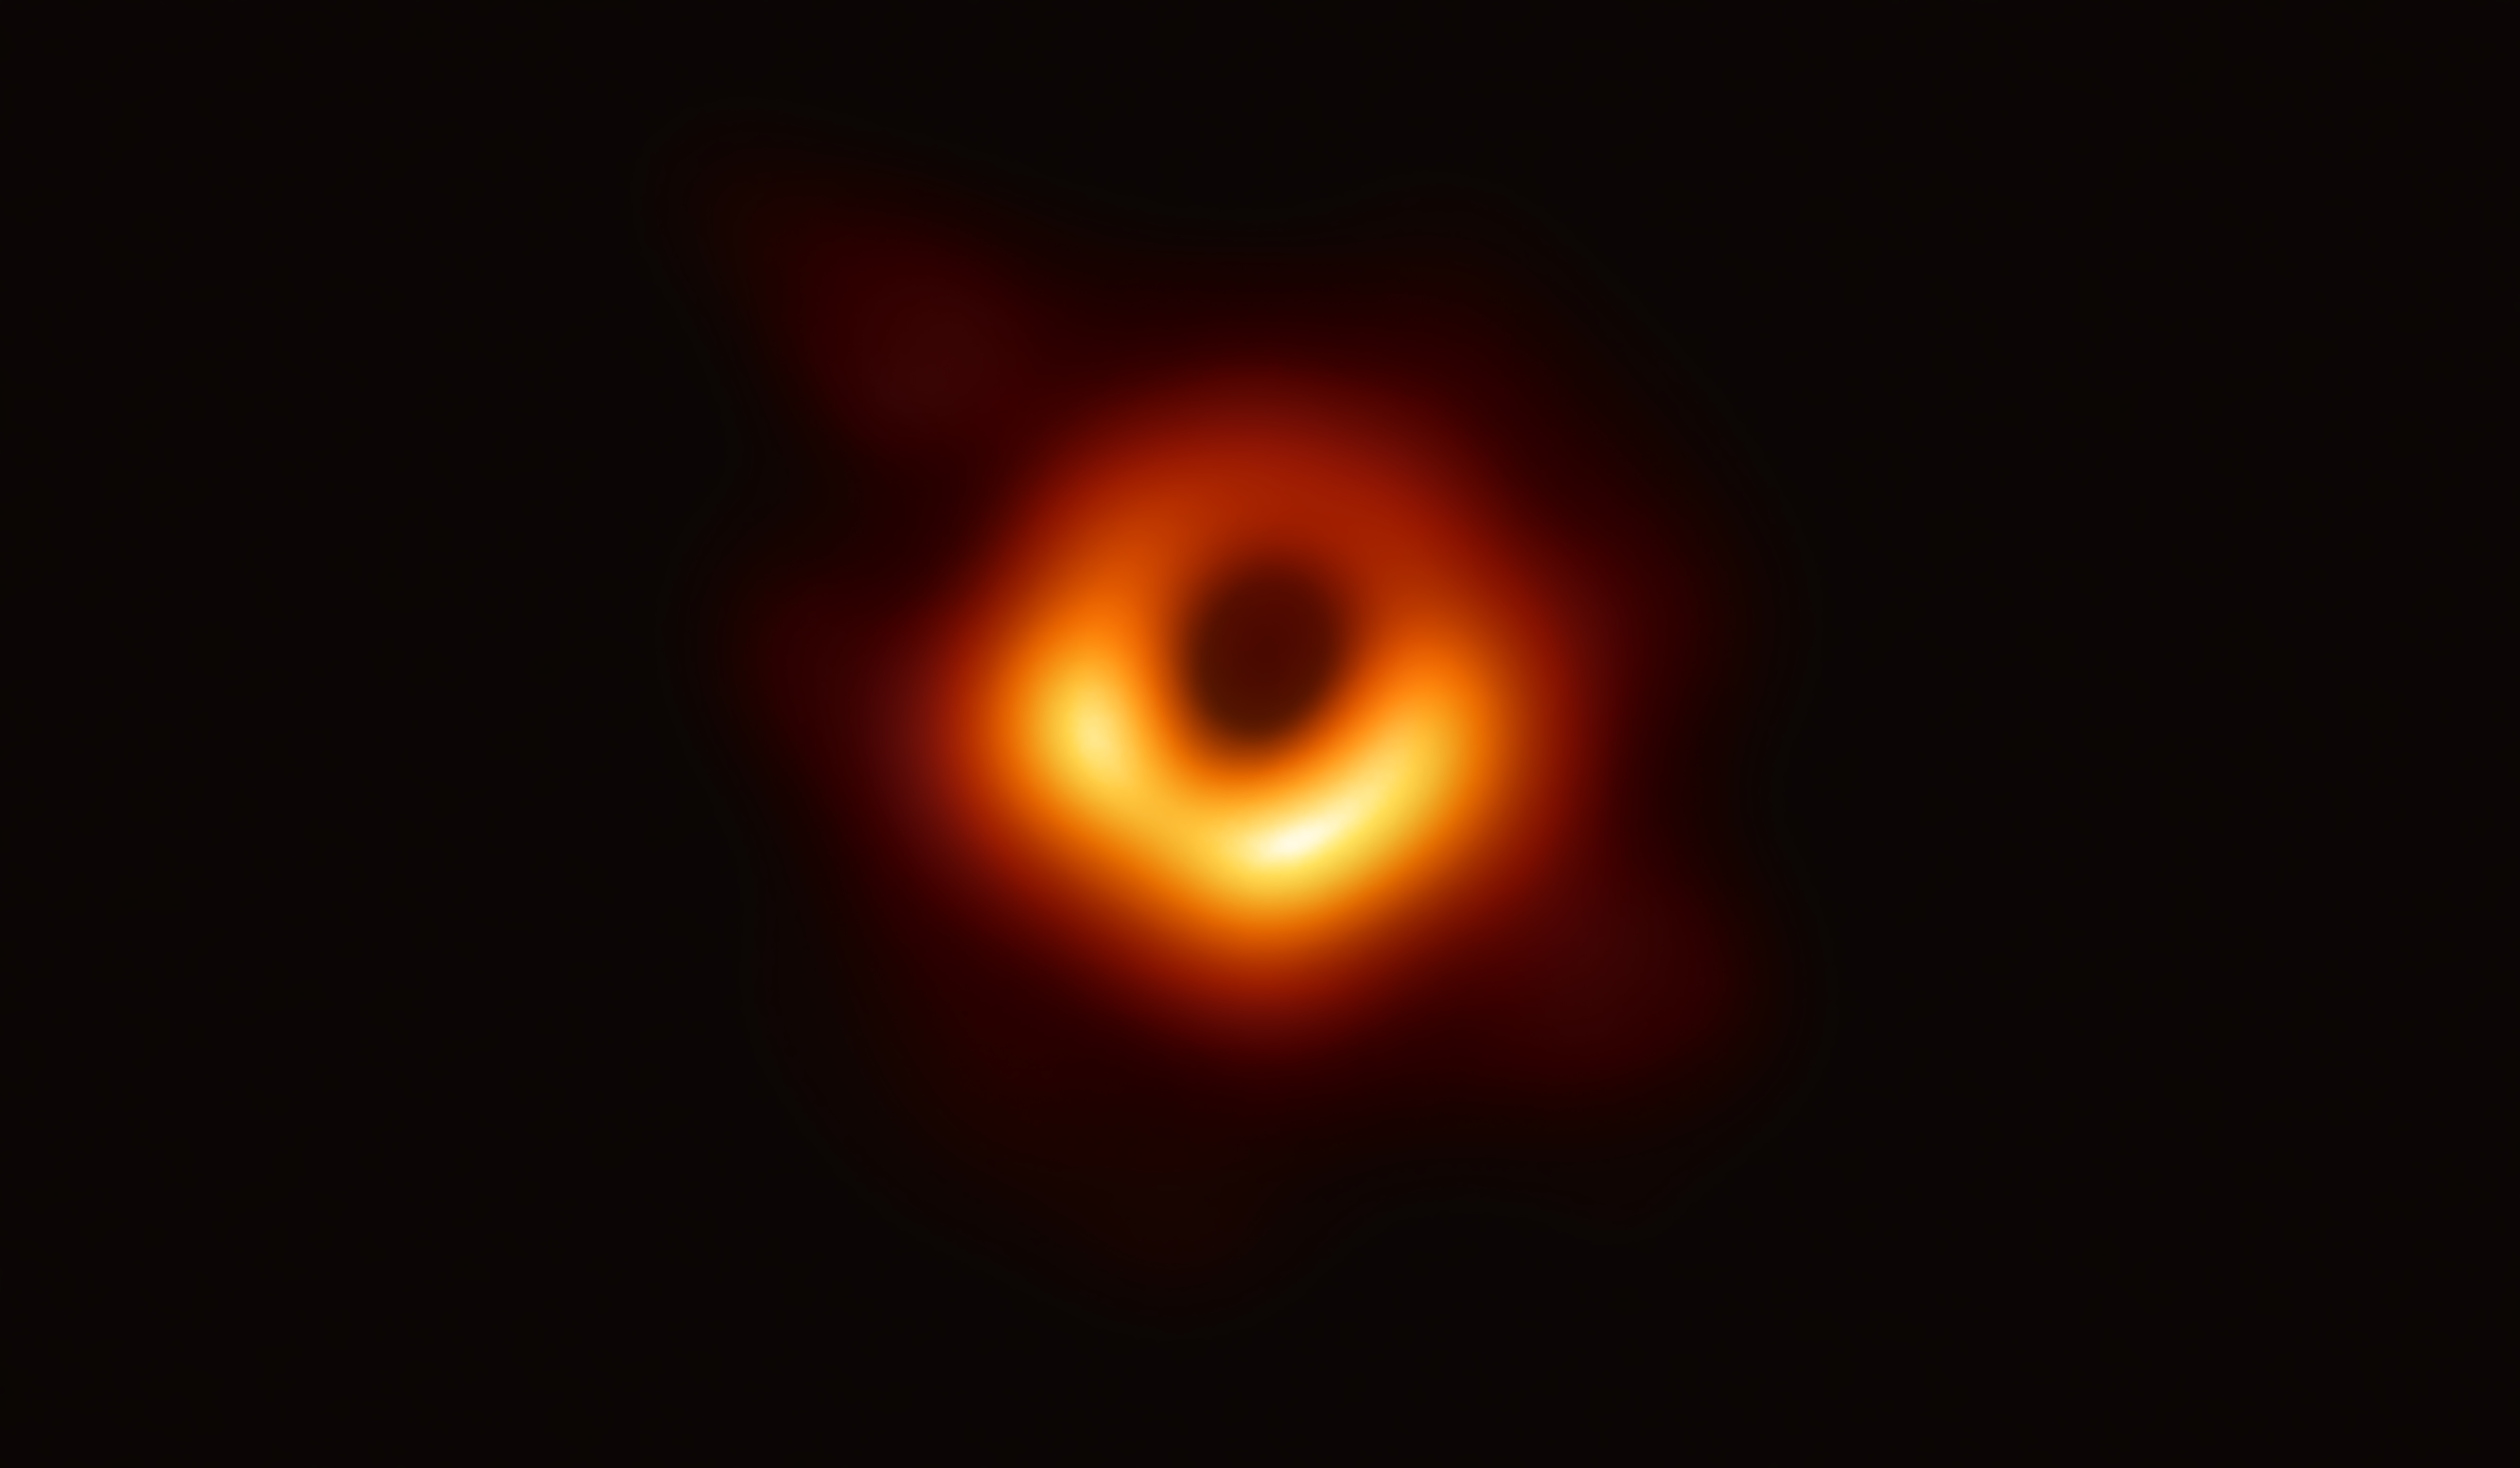 プレスリリース 史上初 ブラックホールの撮影に成功 地球サイズの電波望遠鏡で 楕円銀河m87に潜む巨大ブラックホールに迫る アルマ望遠鏡